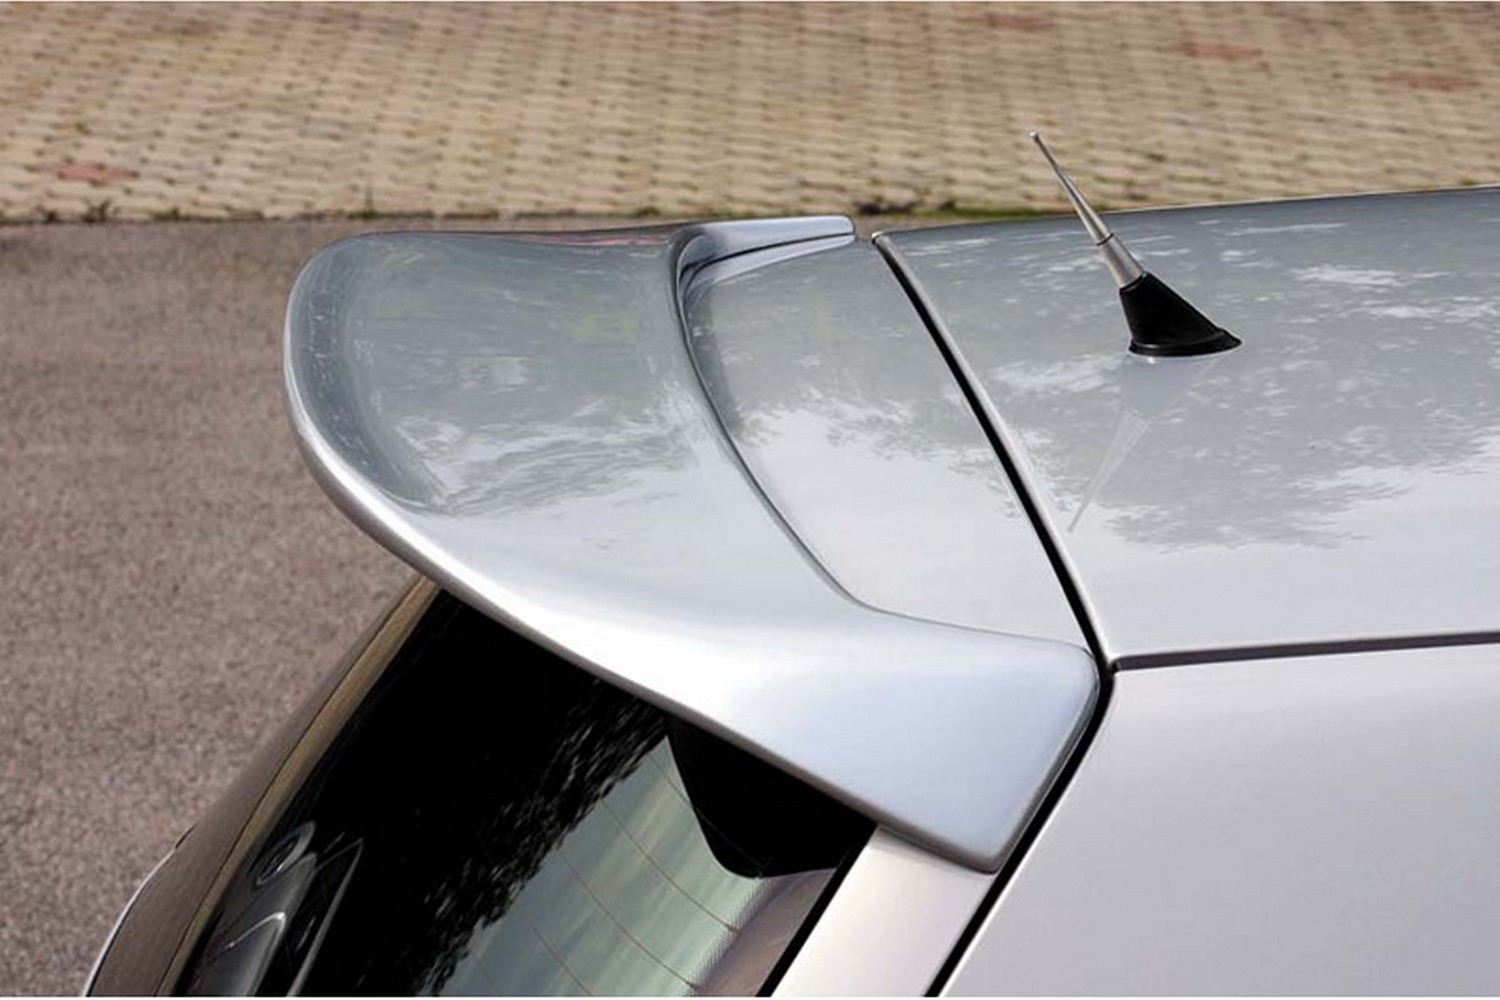 https://www.carparts-expert.com/images/stories/virtuemart/product/vw15gosu-volkswagen-golf-iv-1j-1998-2003-3-5-door-hatchback-roof-spoiler-1.jpg